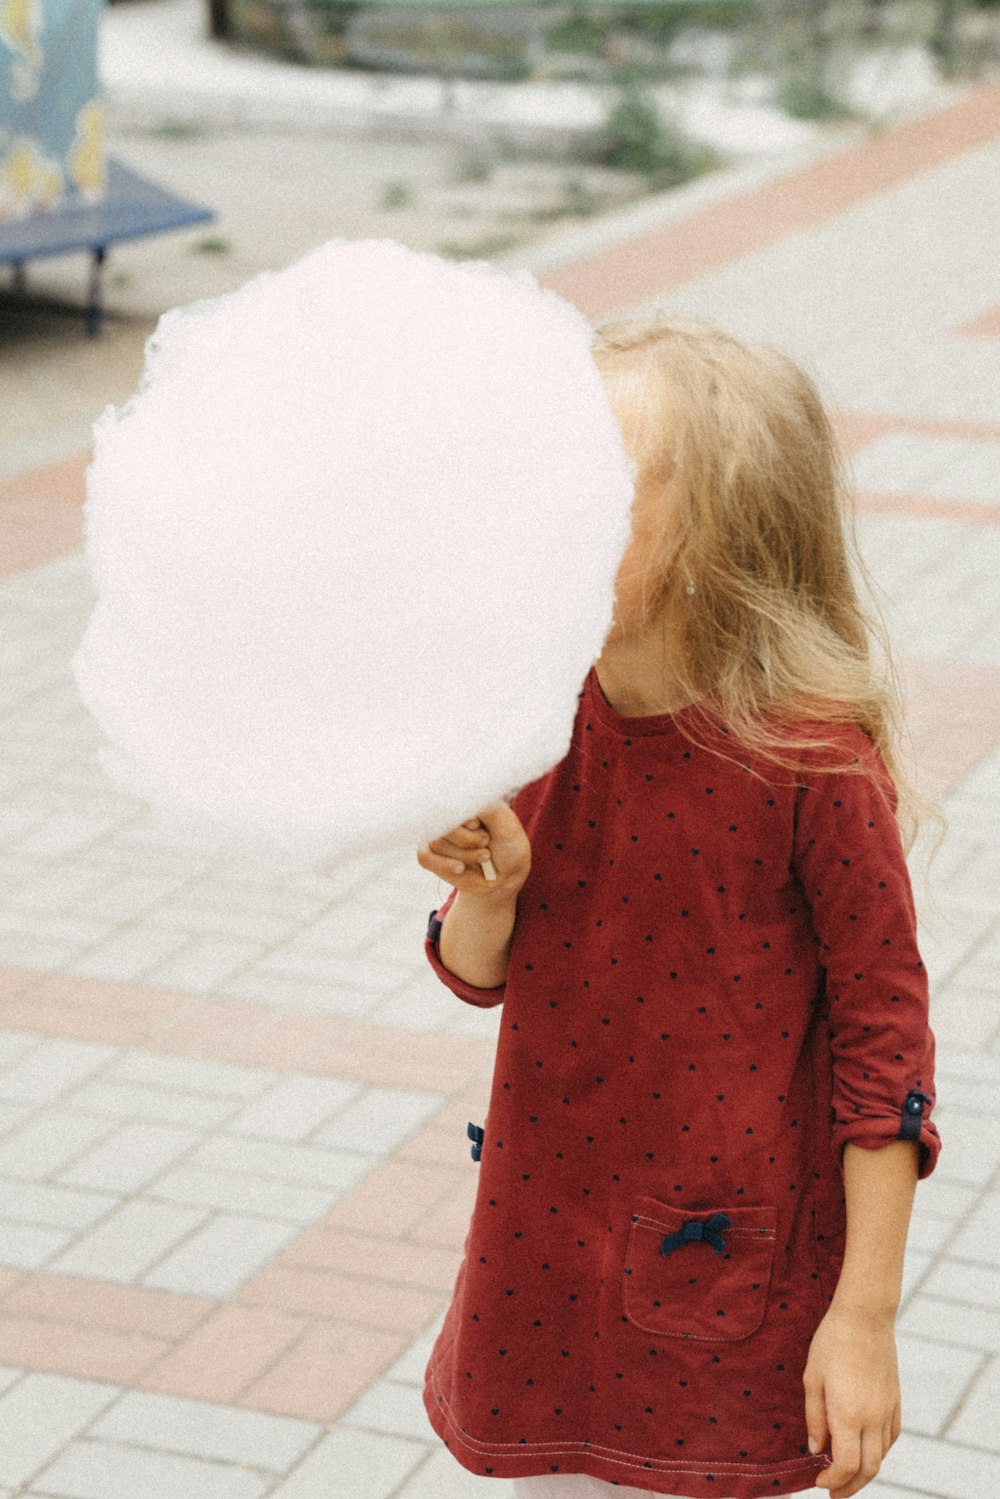 大きな白い綿球を持つ少女